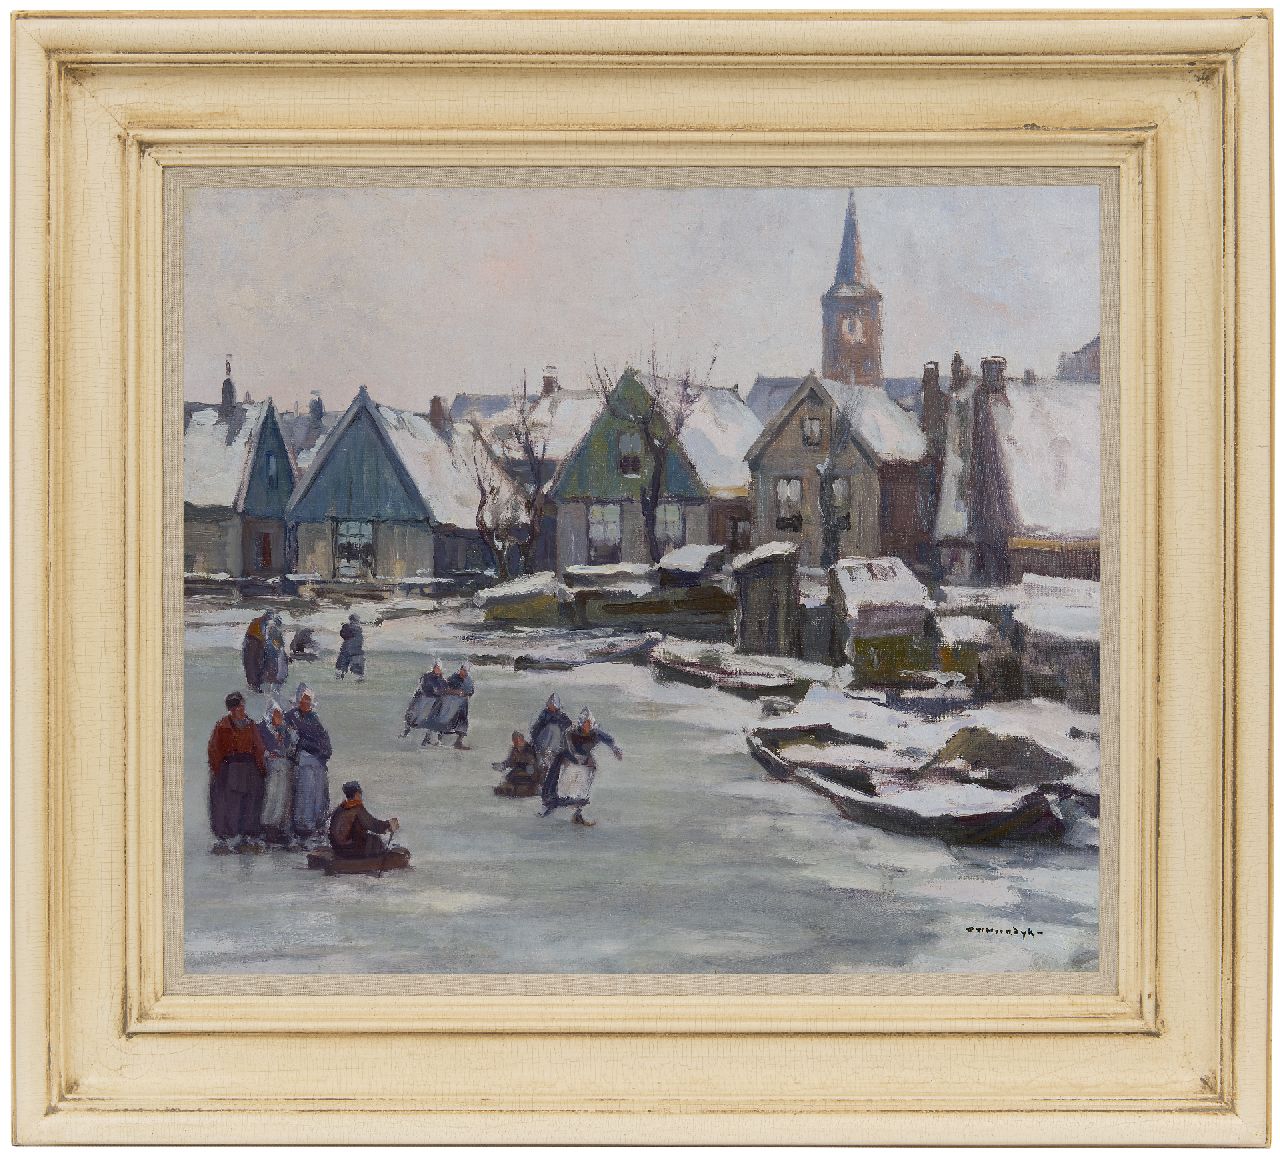 Noordijk W.F.  | 'Willem' Frederik Noordijk | Schilderijen te koop aangeboden | IJspret in Volendam, olieverf op doek 46,3 x 54,4 cm, gesigneerd rechtsonder